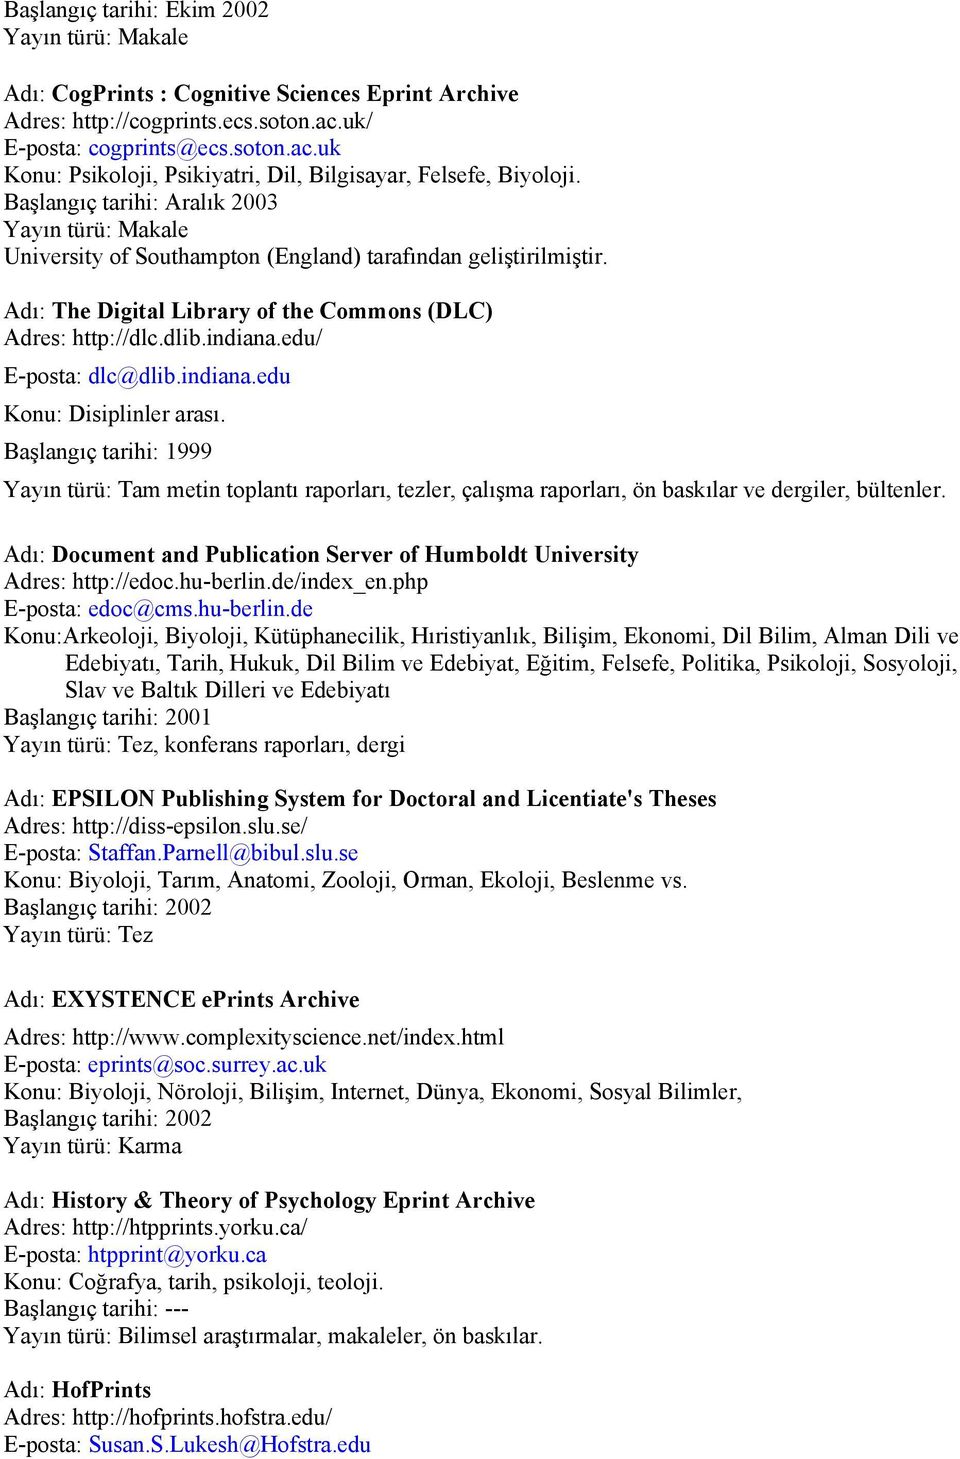 Başlangıç tarihi: Aralık 2003 Yayın türü: Makale University of Southampton (England) tarafından geliştirilmiştir. Adı: The Digital Library of the Commons (DLC) Adres: http://dlc.dlib.indiana.